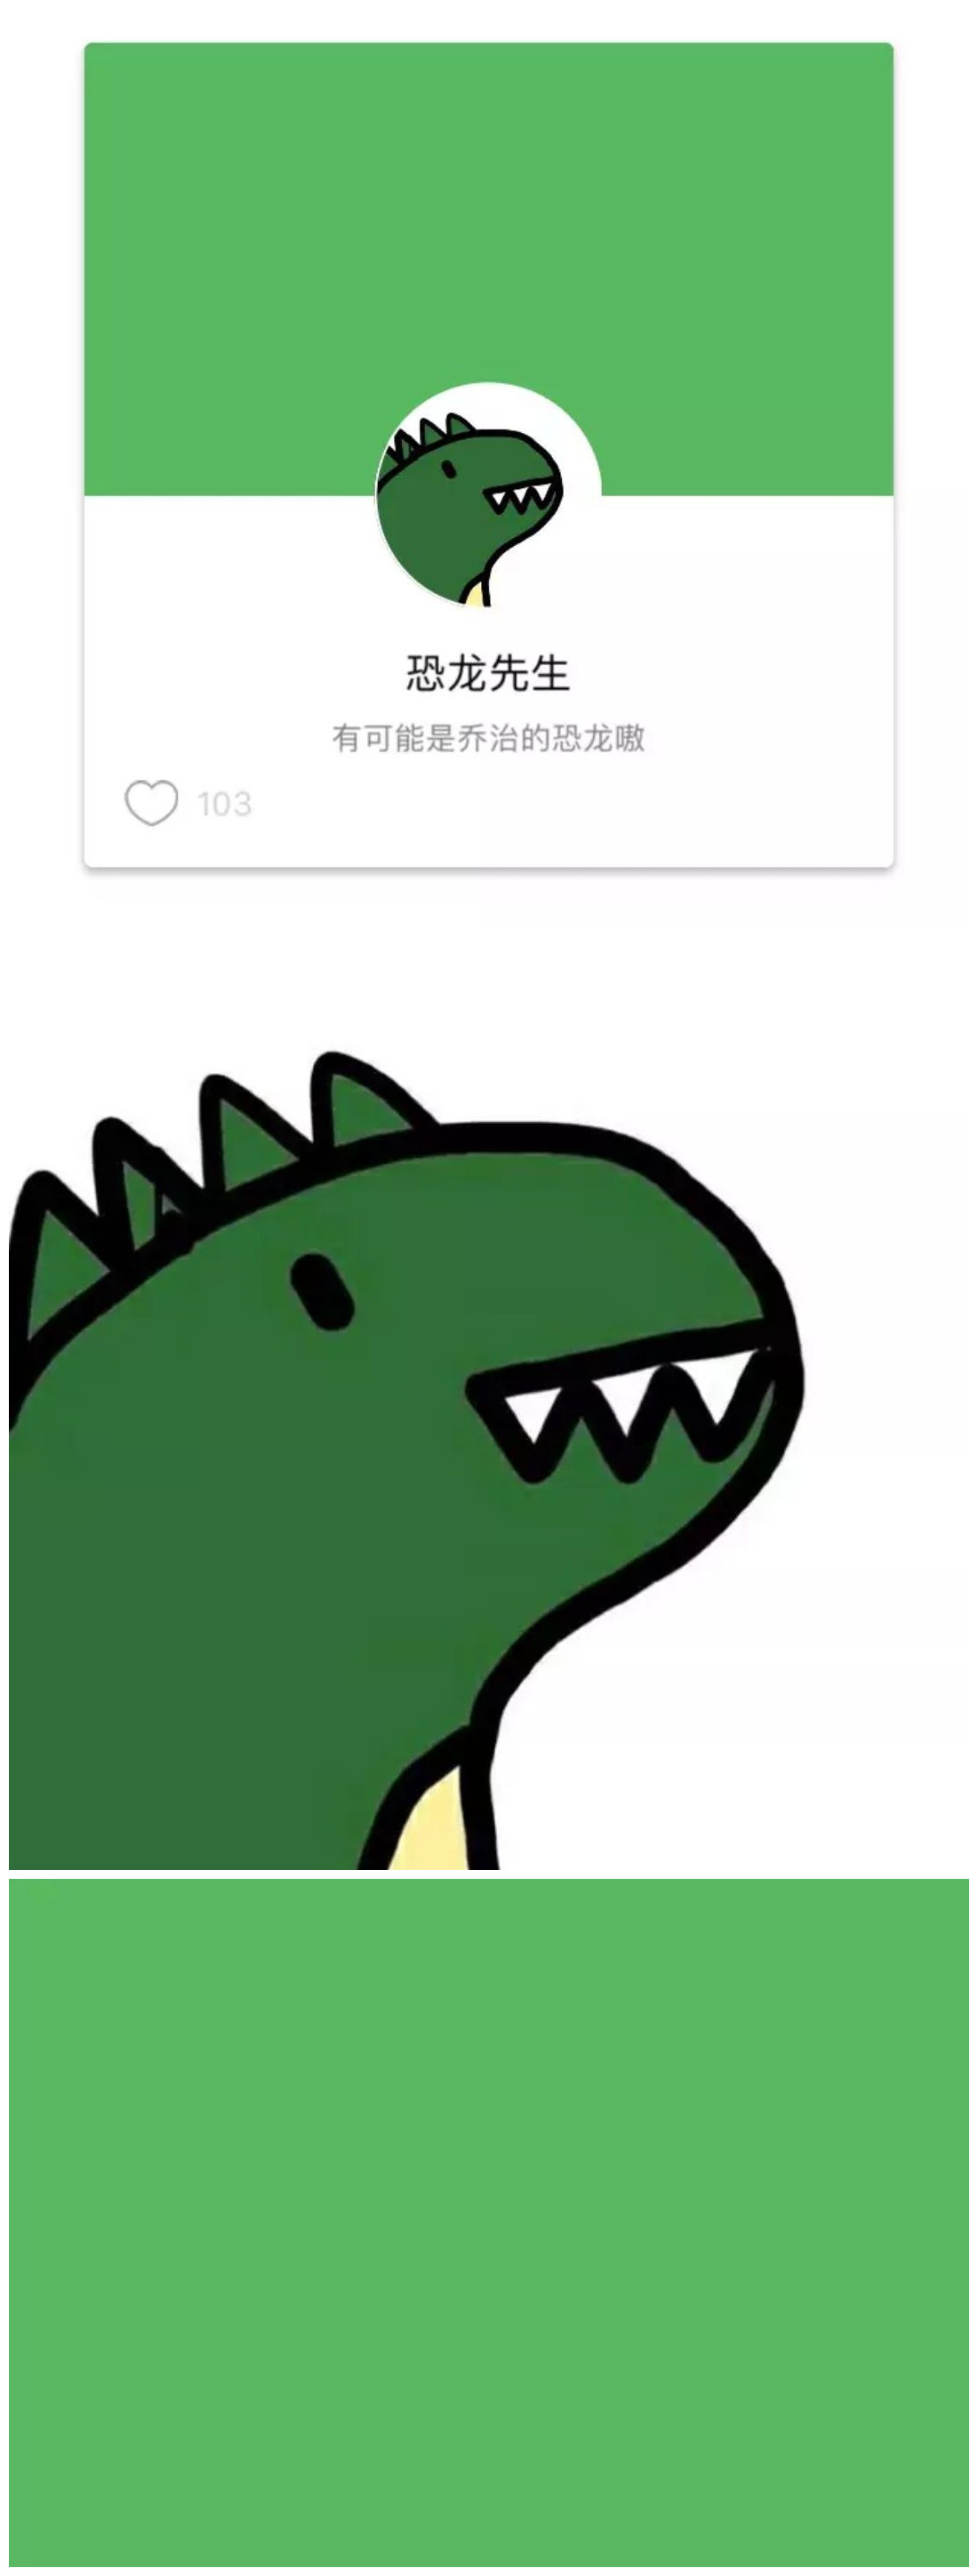 他的背景是翠绿色的也是恐龙的颜色,头像是一个长着尖牙但是呆萌的小